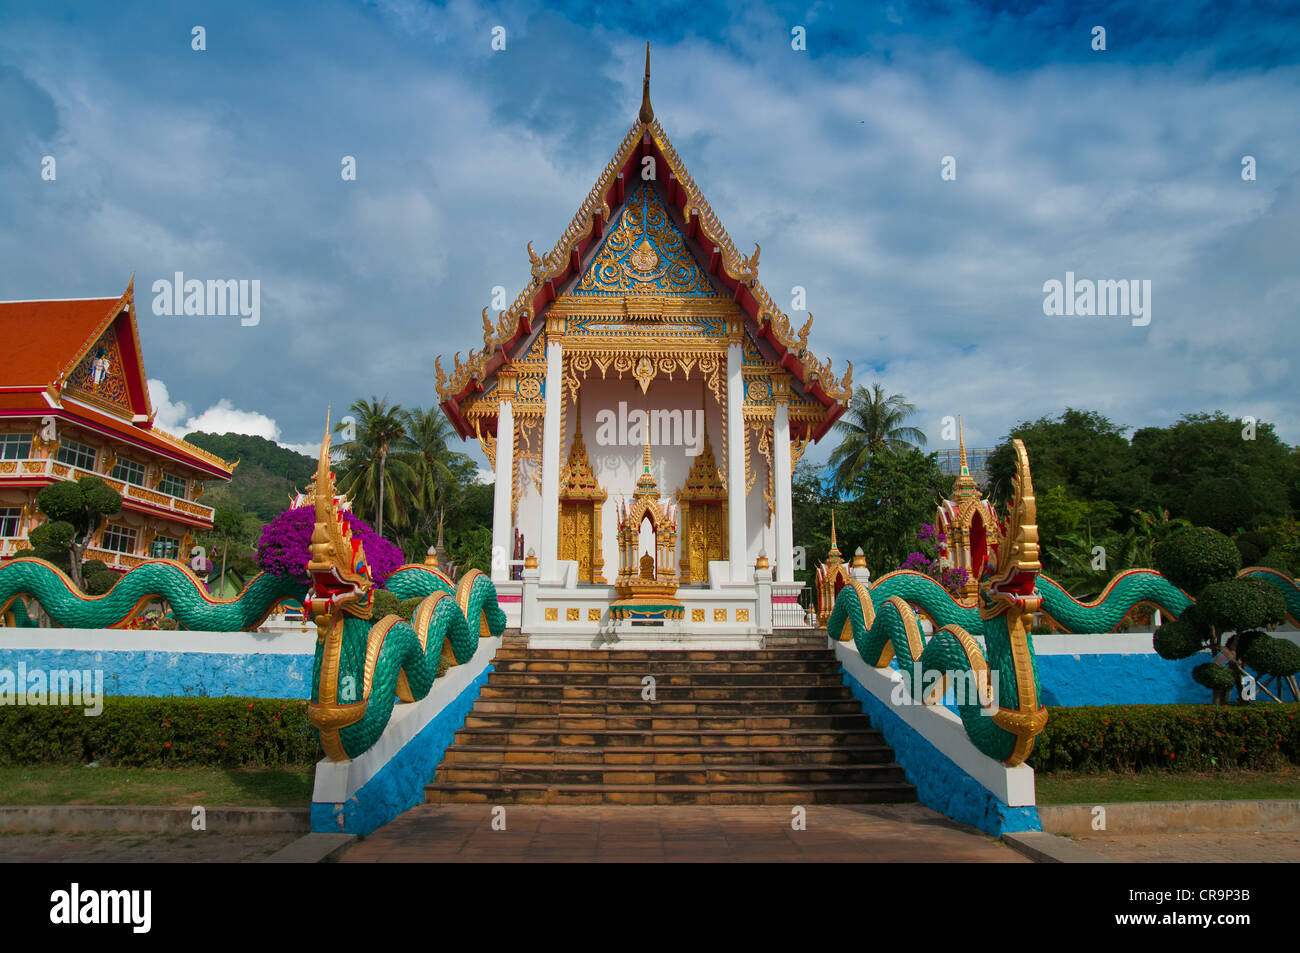 Serpents sur l'escalier de Wat temple bouddhiste de Karon à Phuket, Thaïlande Banque D'Images